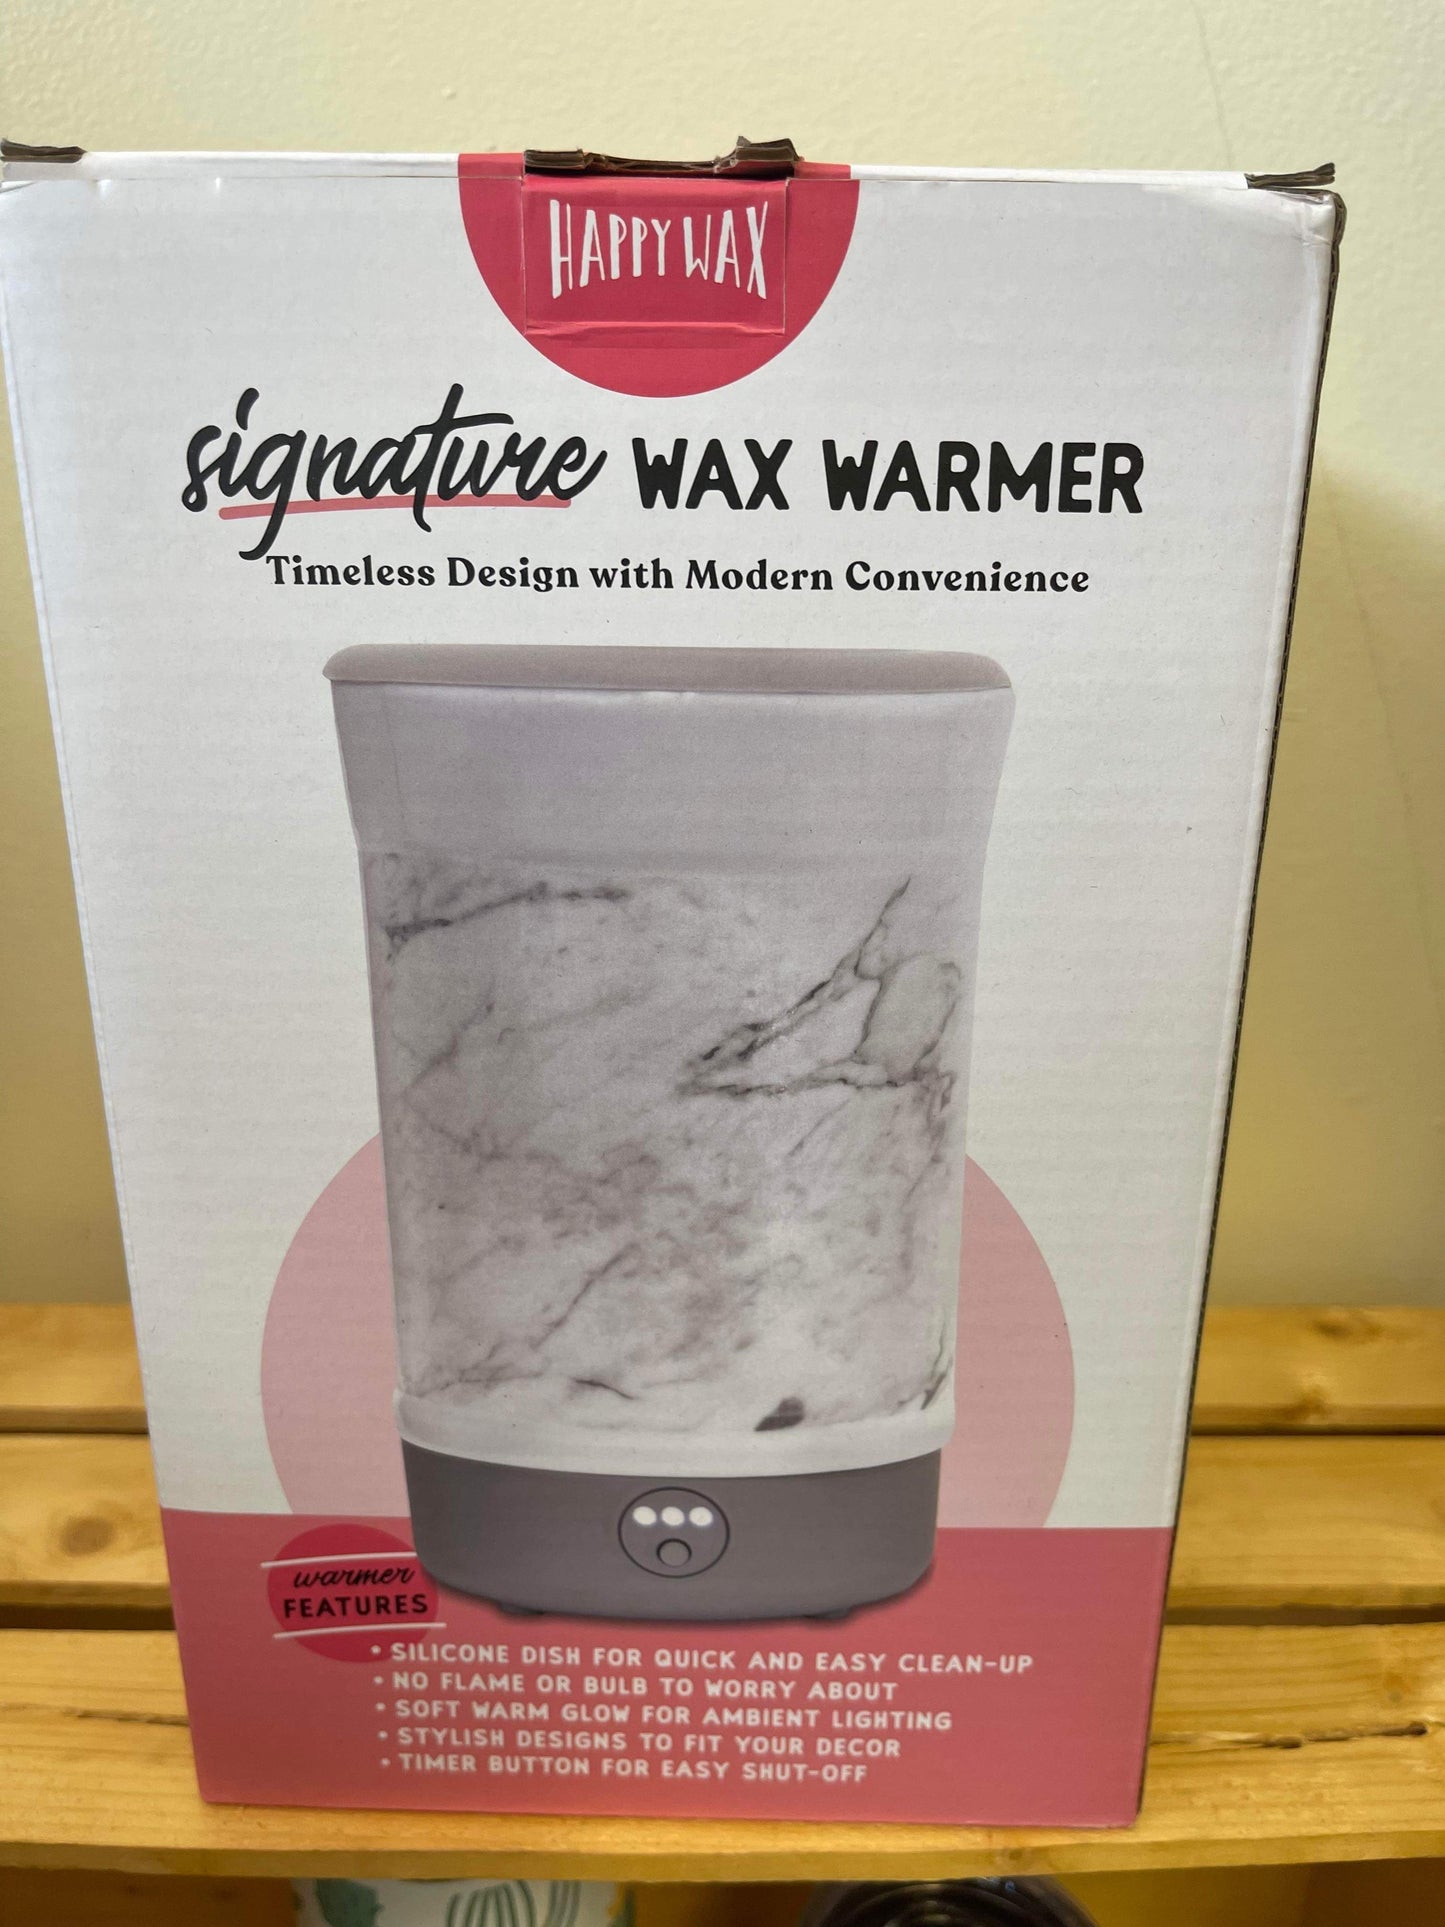 Happy Wax Warmer